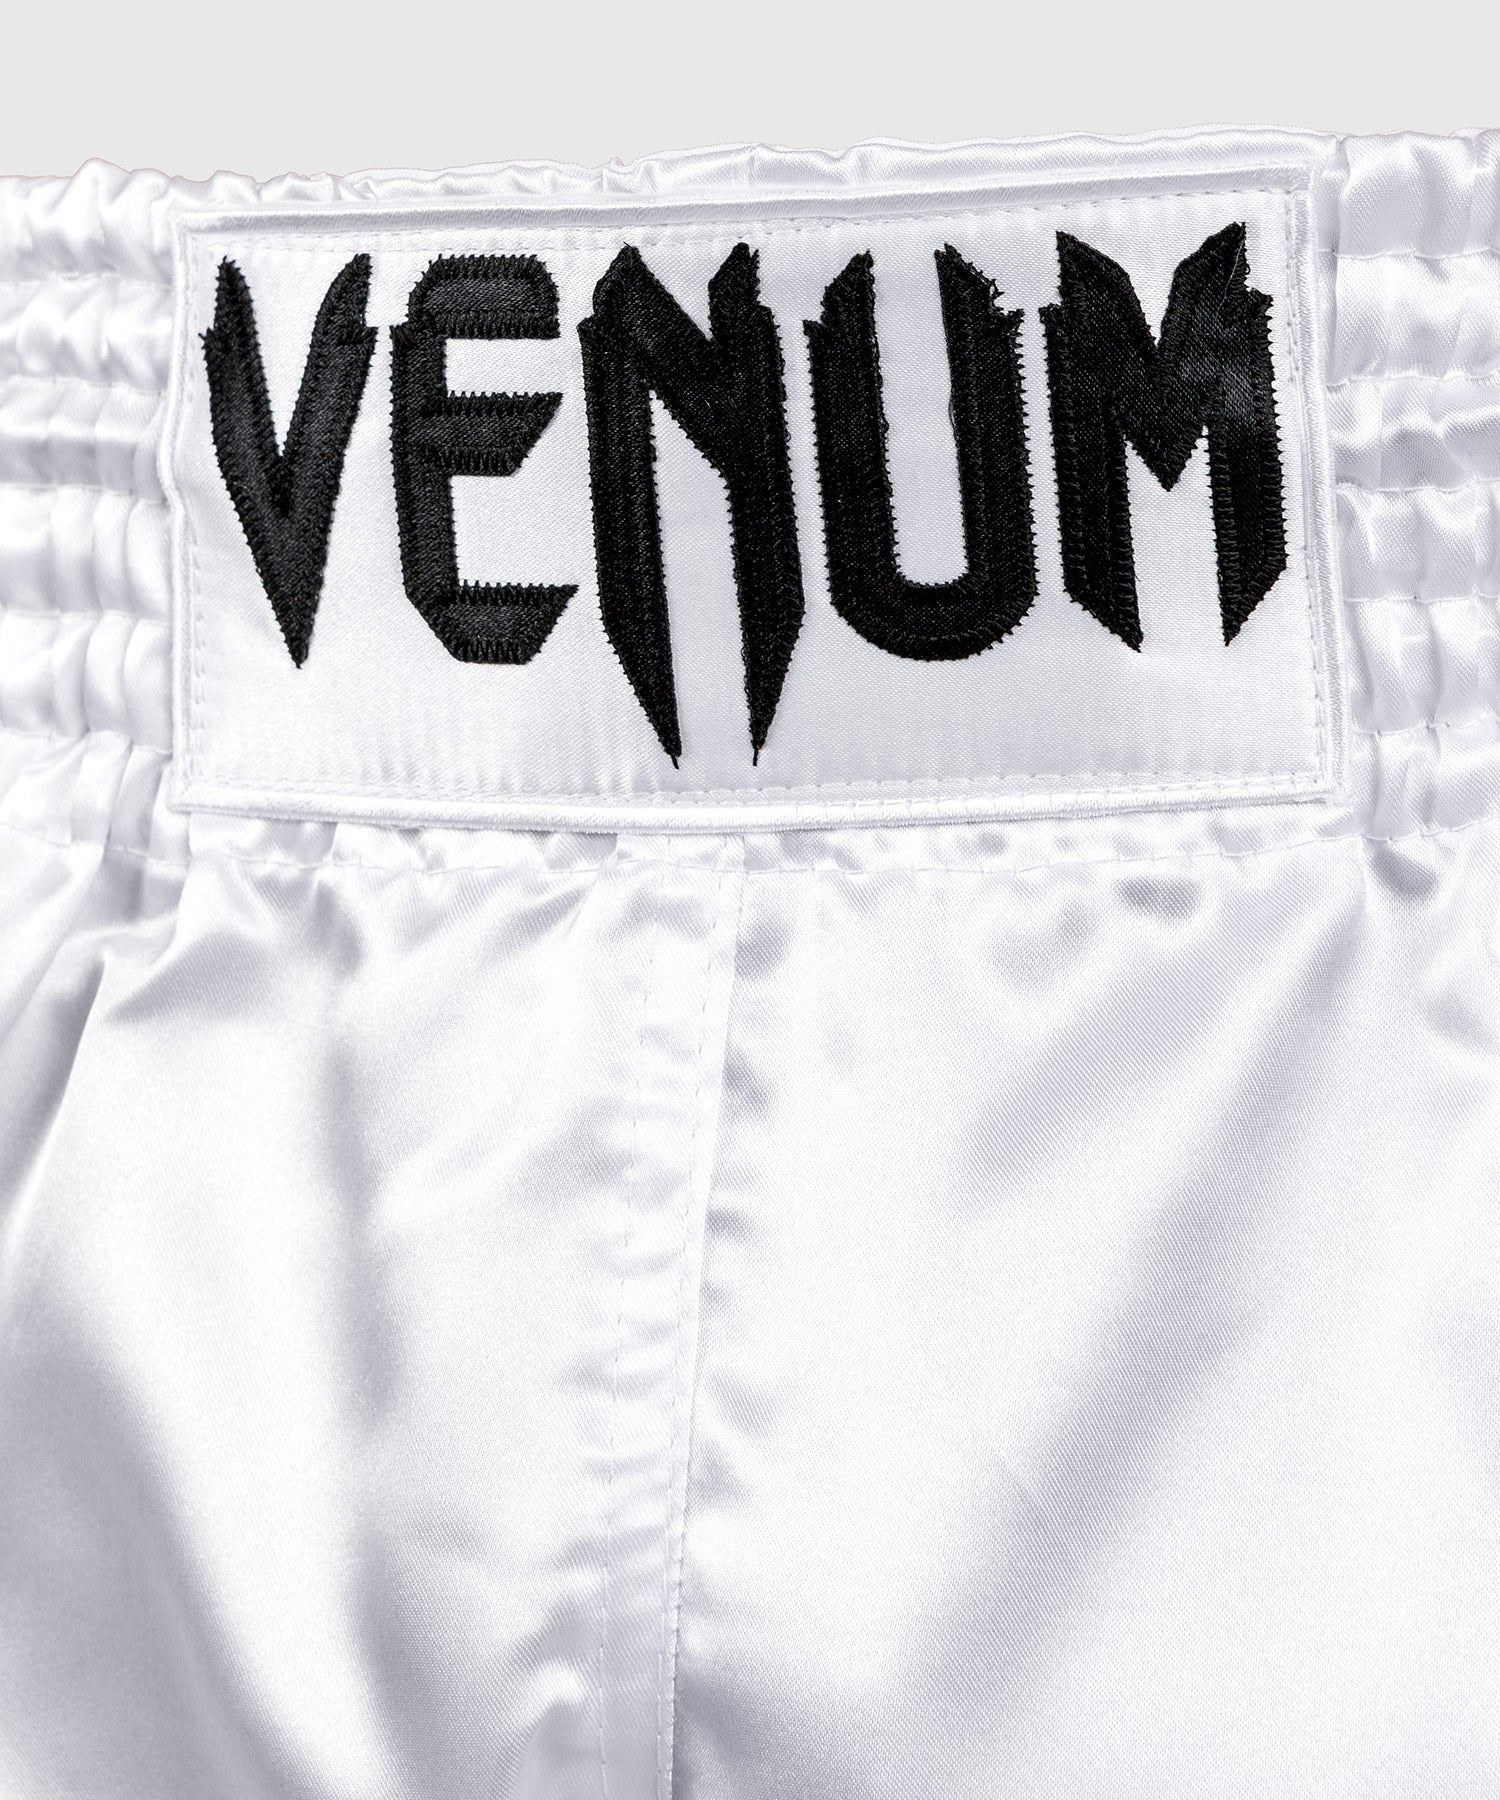 Venum Classic Muay Thaï Short Khaki/White - Venum Asia